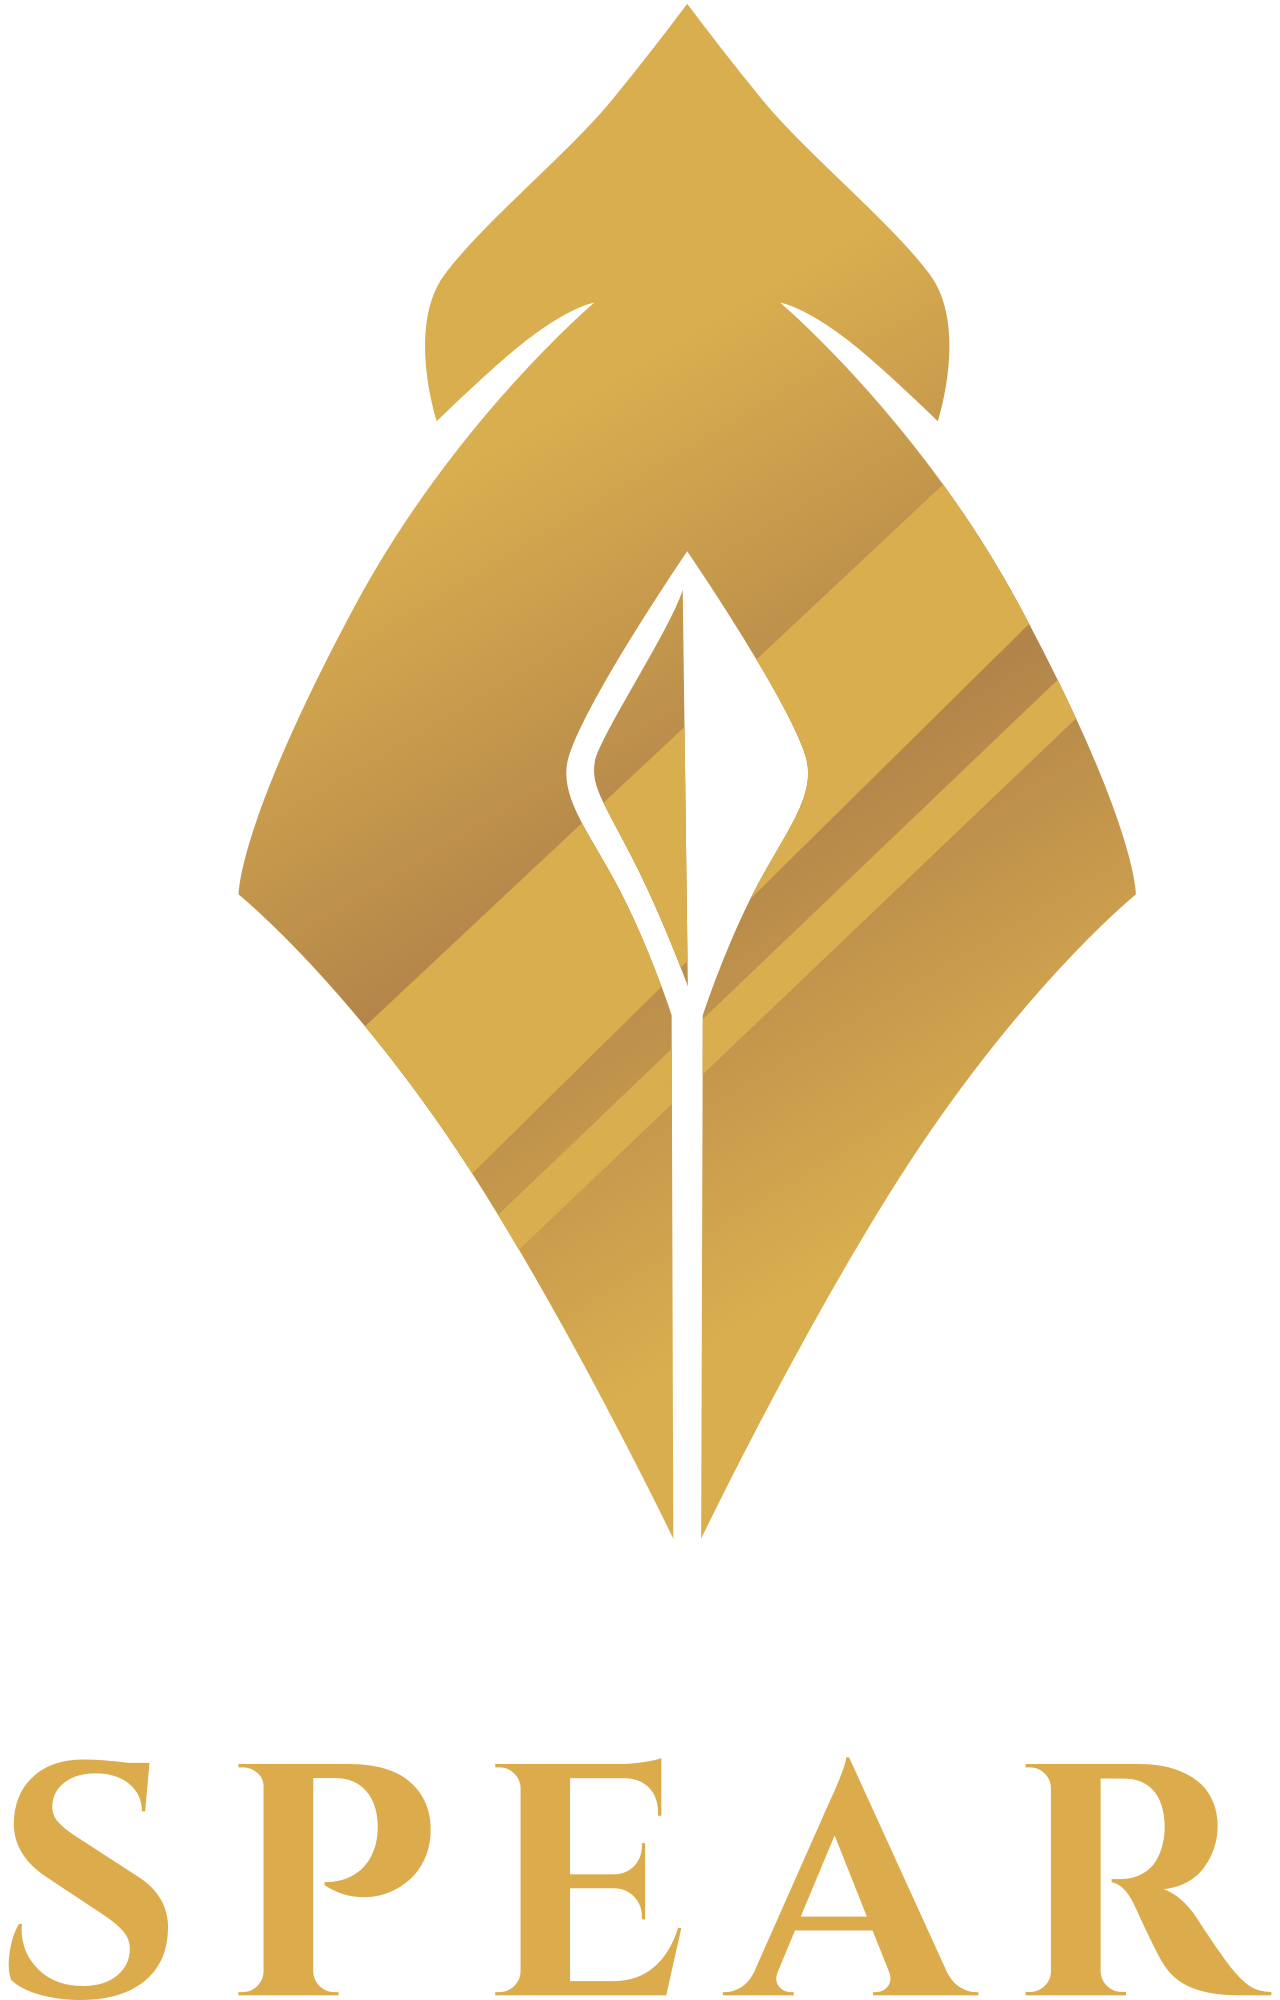 SPEAR 's logo